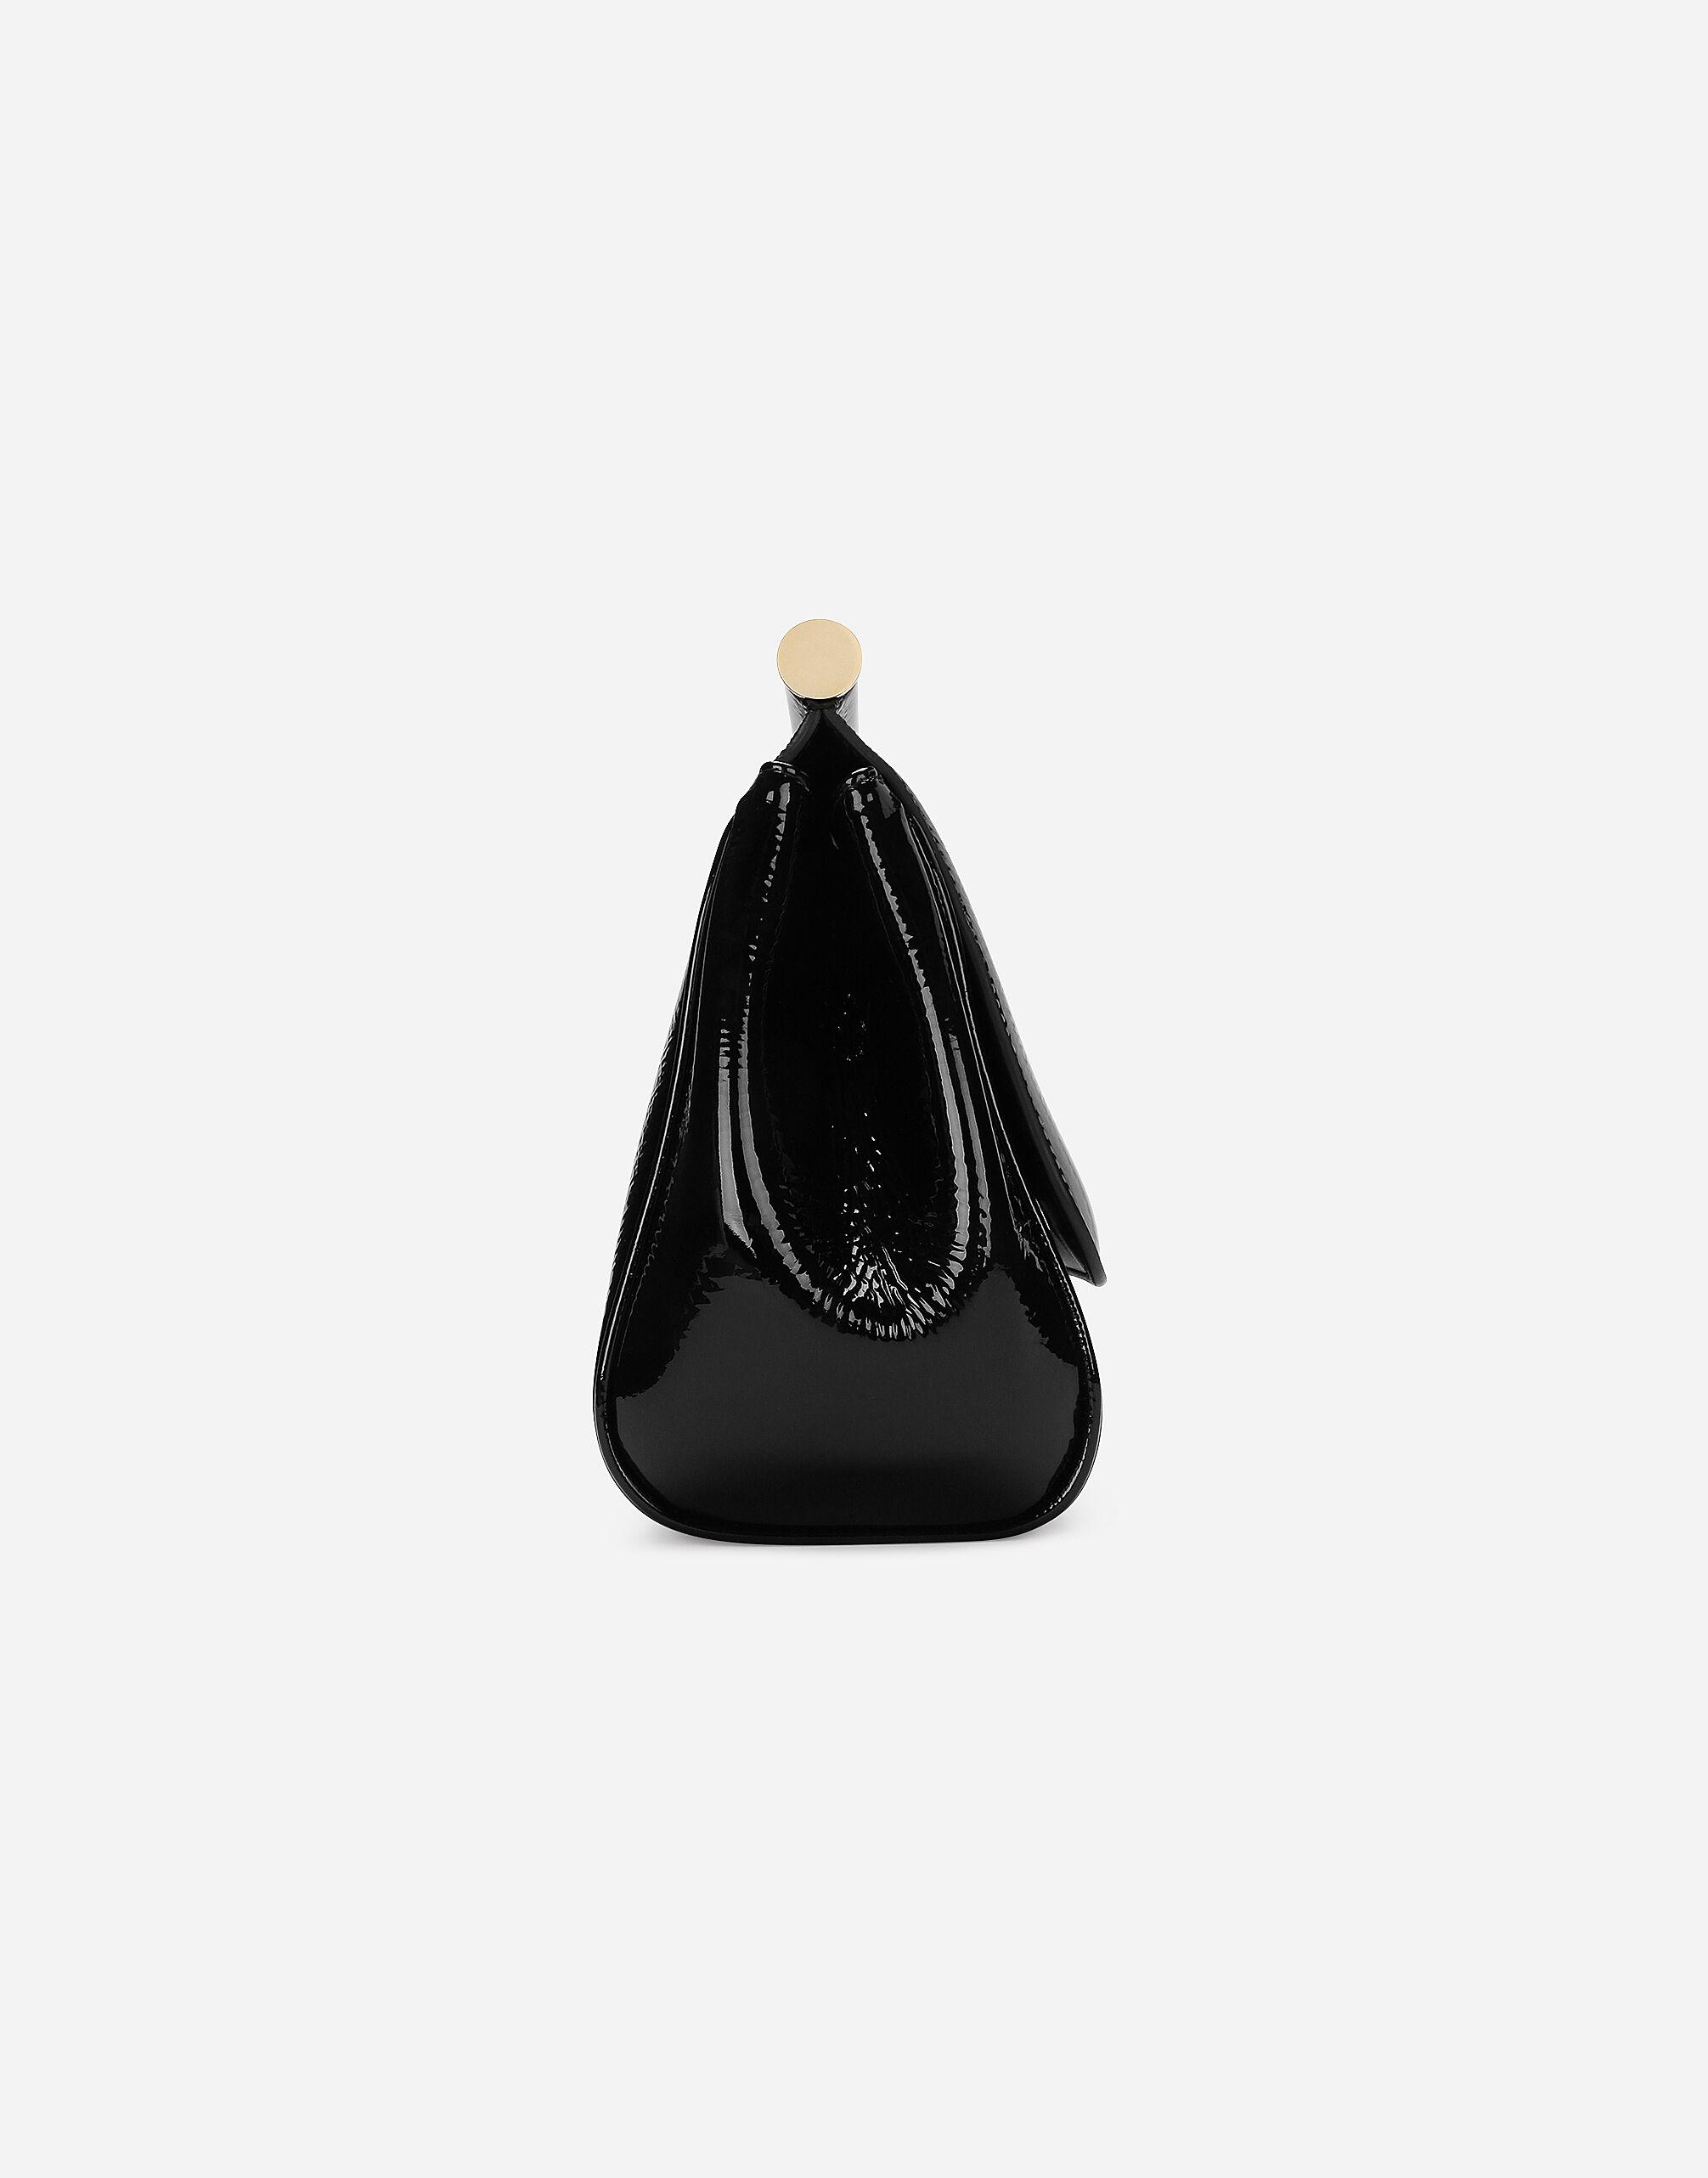 Men Clutch Bag Casual Long Zipper Wallet Large Capacity Handbag(Black)